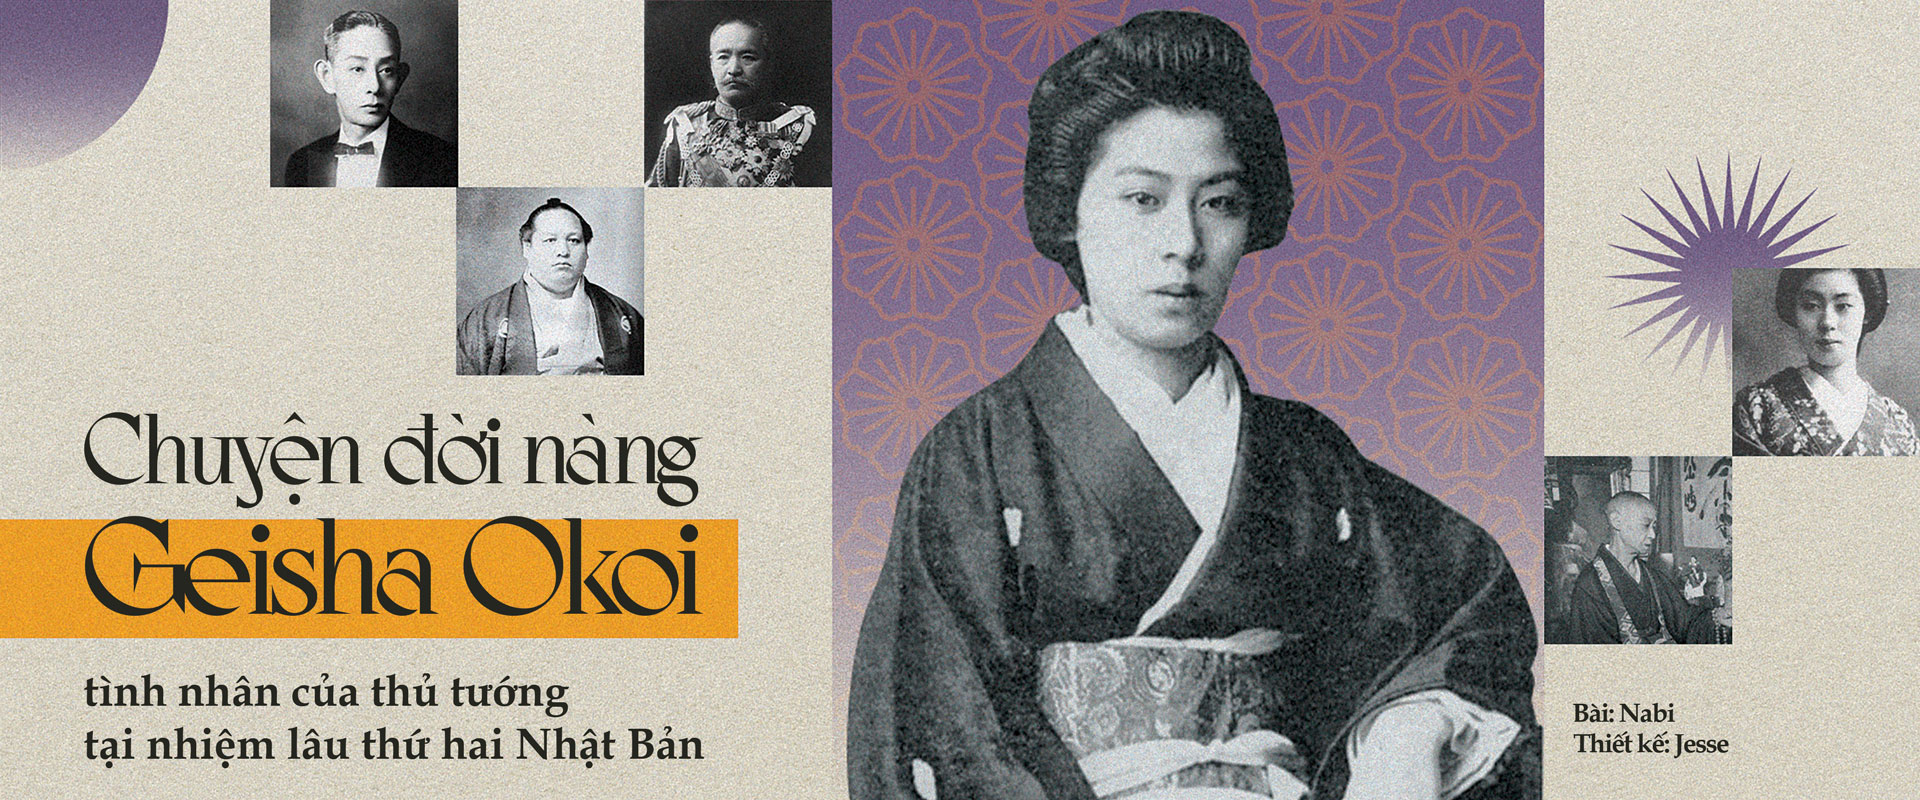 Chuyện đời nàng Geisha Okoi - tình nhân của thủ tướng tại nhiệm lâu thứ hai Nhật Bản.